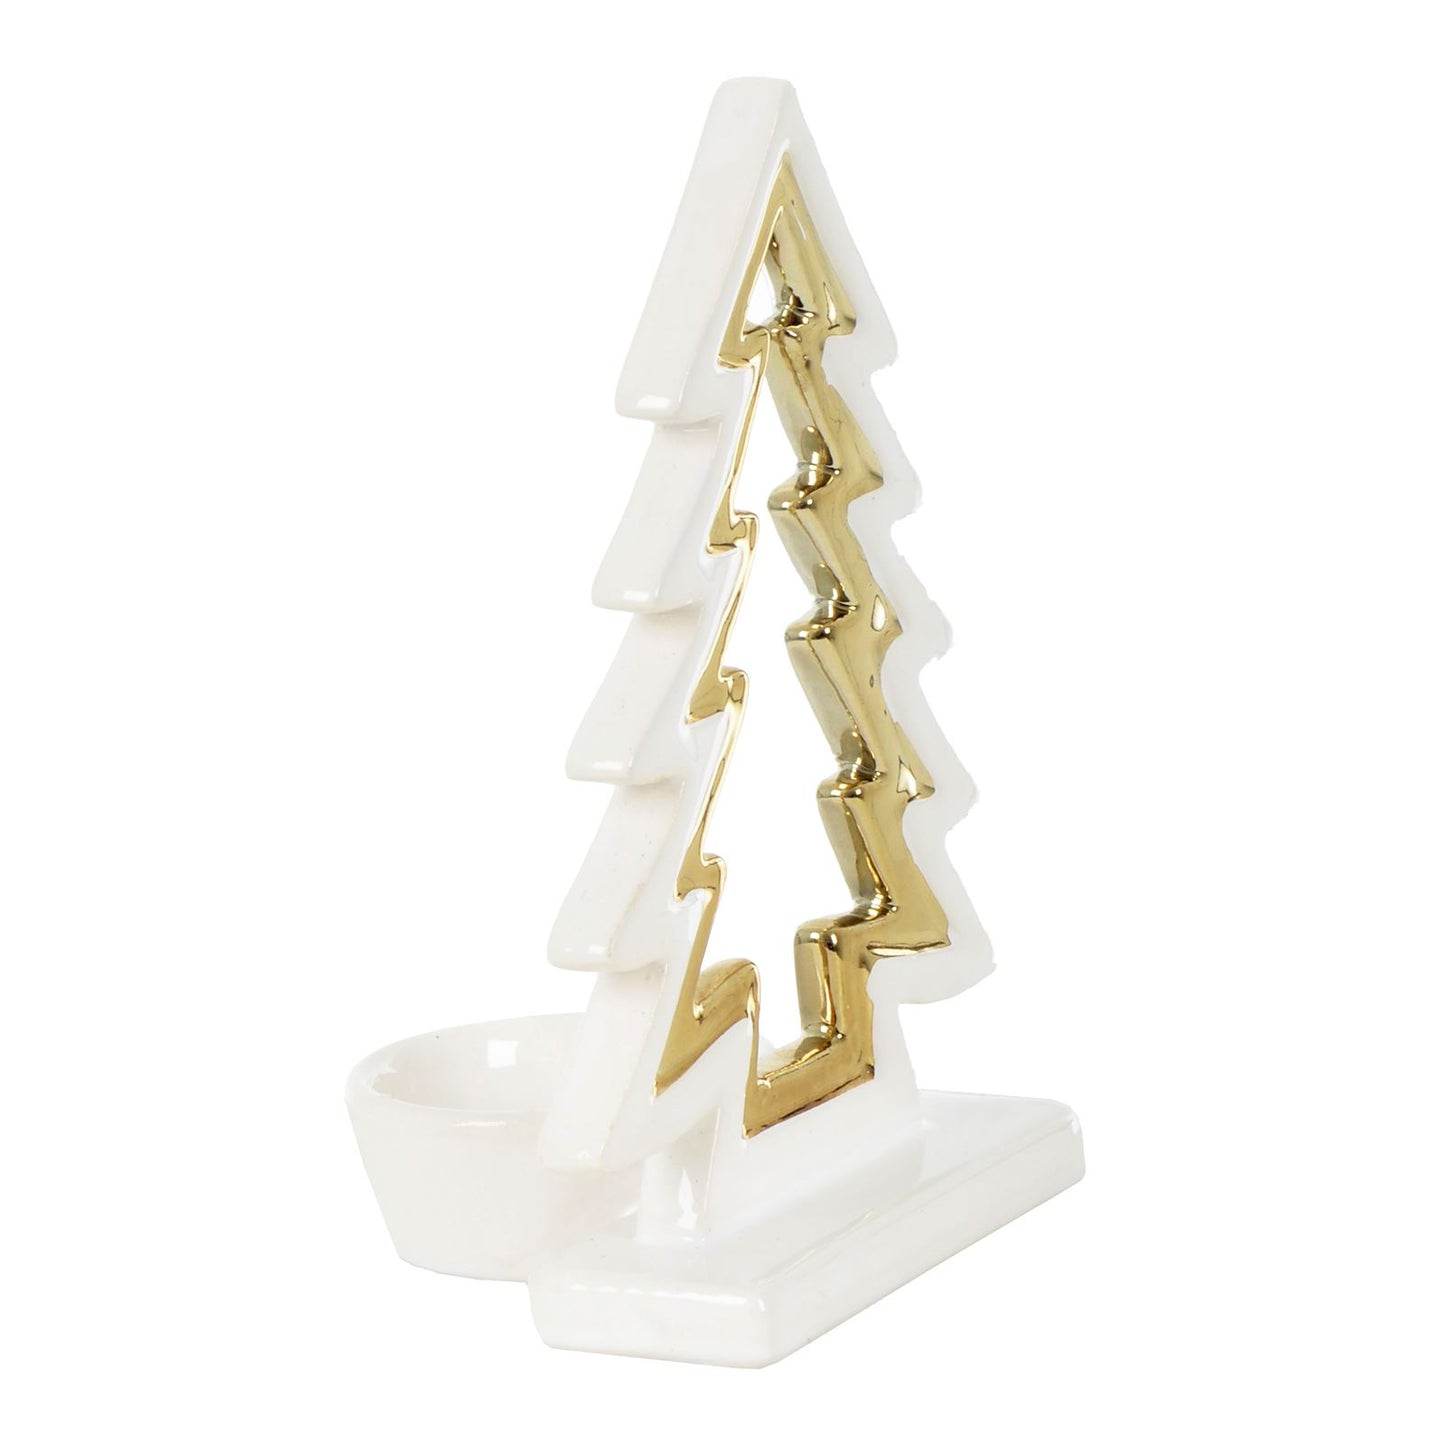 Mr Crimbo Christmas Tree Tealight Candle Holder White Gold - MrCrimbo.co.uk -XS5784 - 15cm -candles